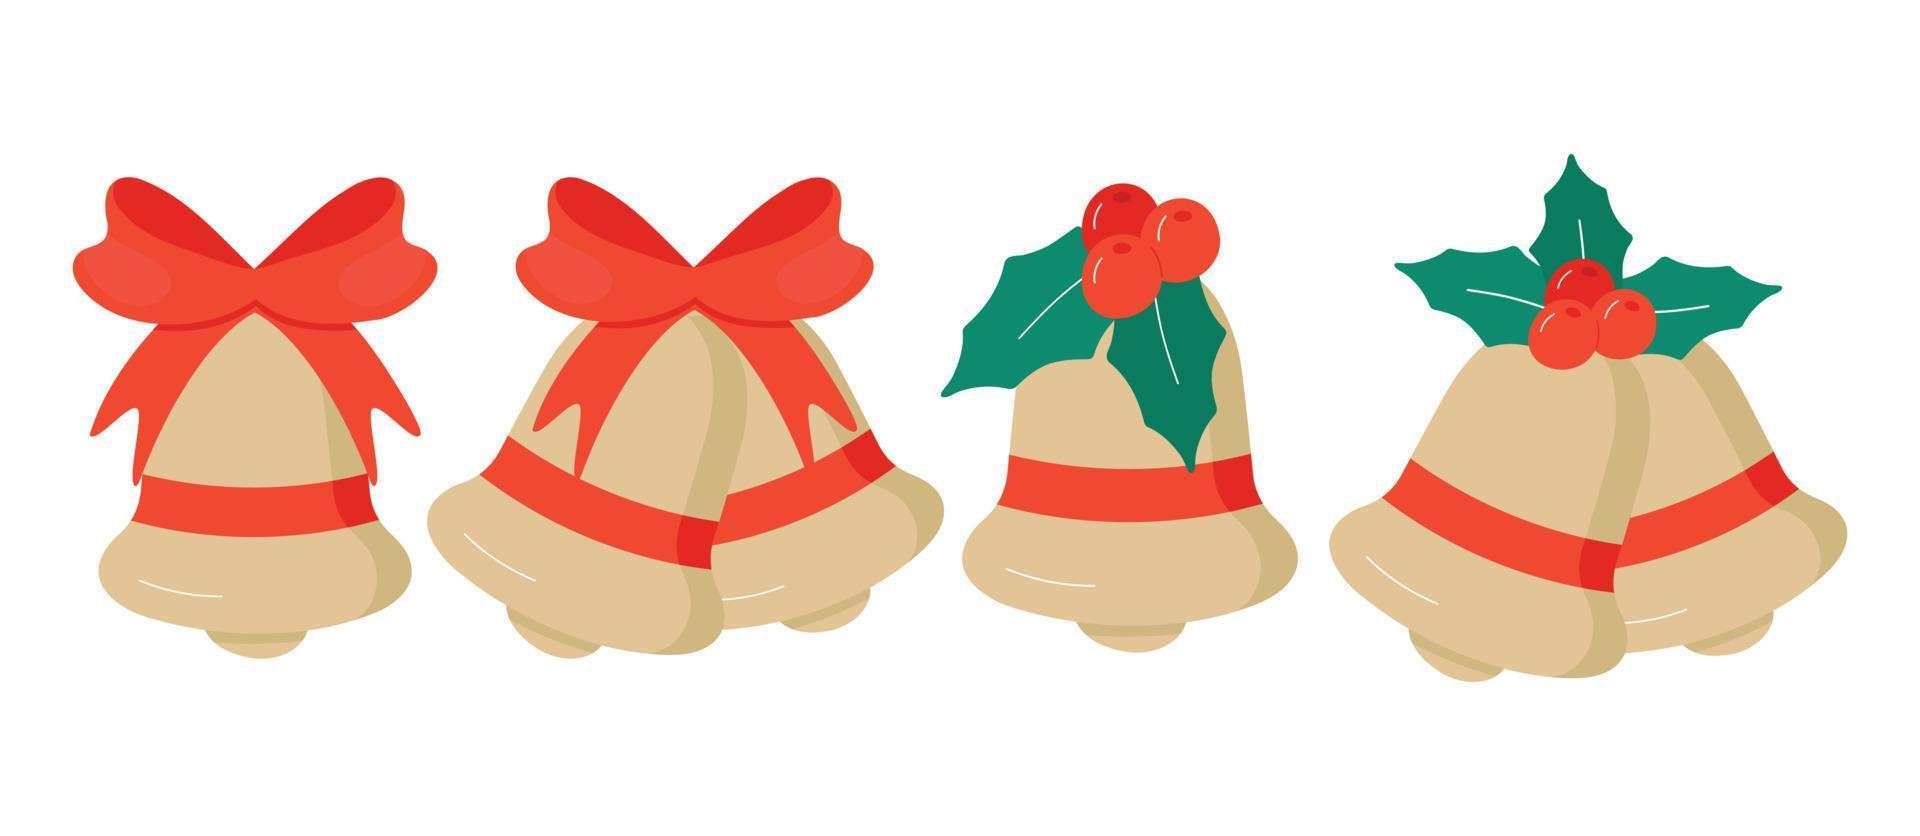 vetor sinos de natal dourados com ramo de azevinho com bagas e laço vermelho isolado em um fundo branco.